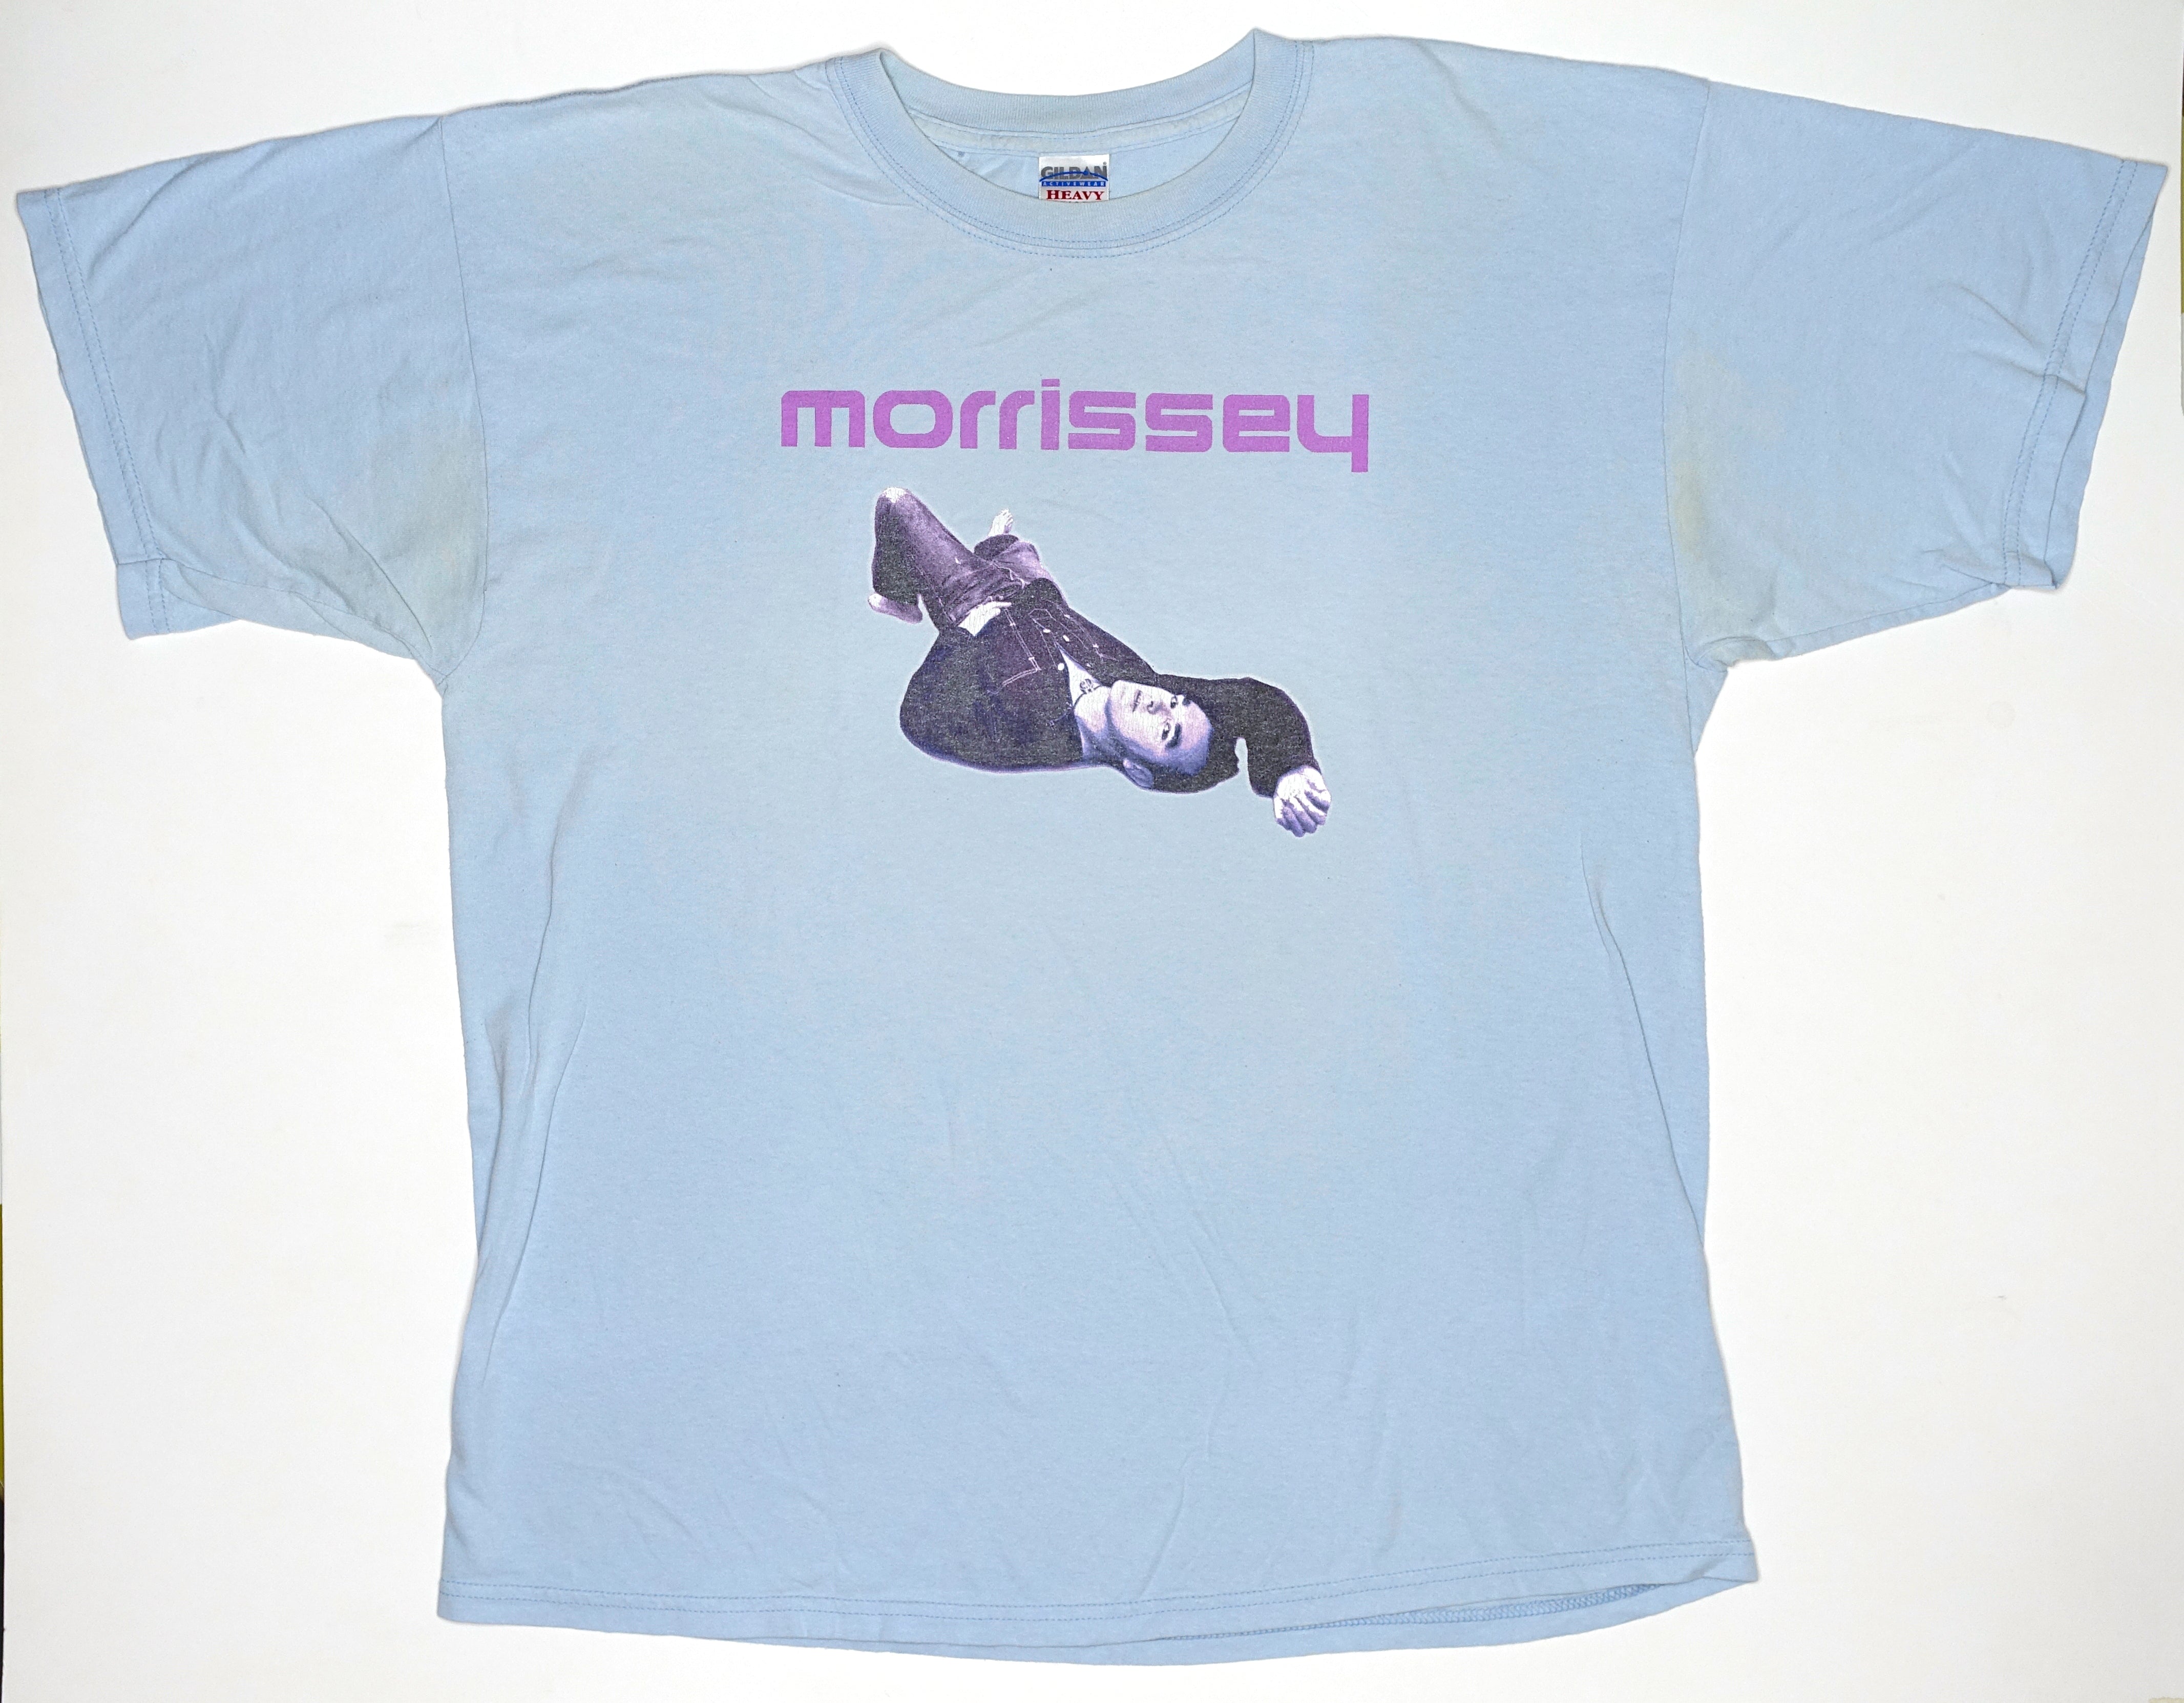 Morrissey - Earls Court 2004 Tour Shirt Size XL